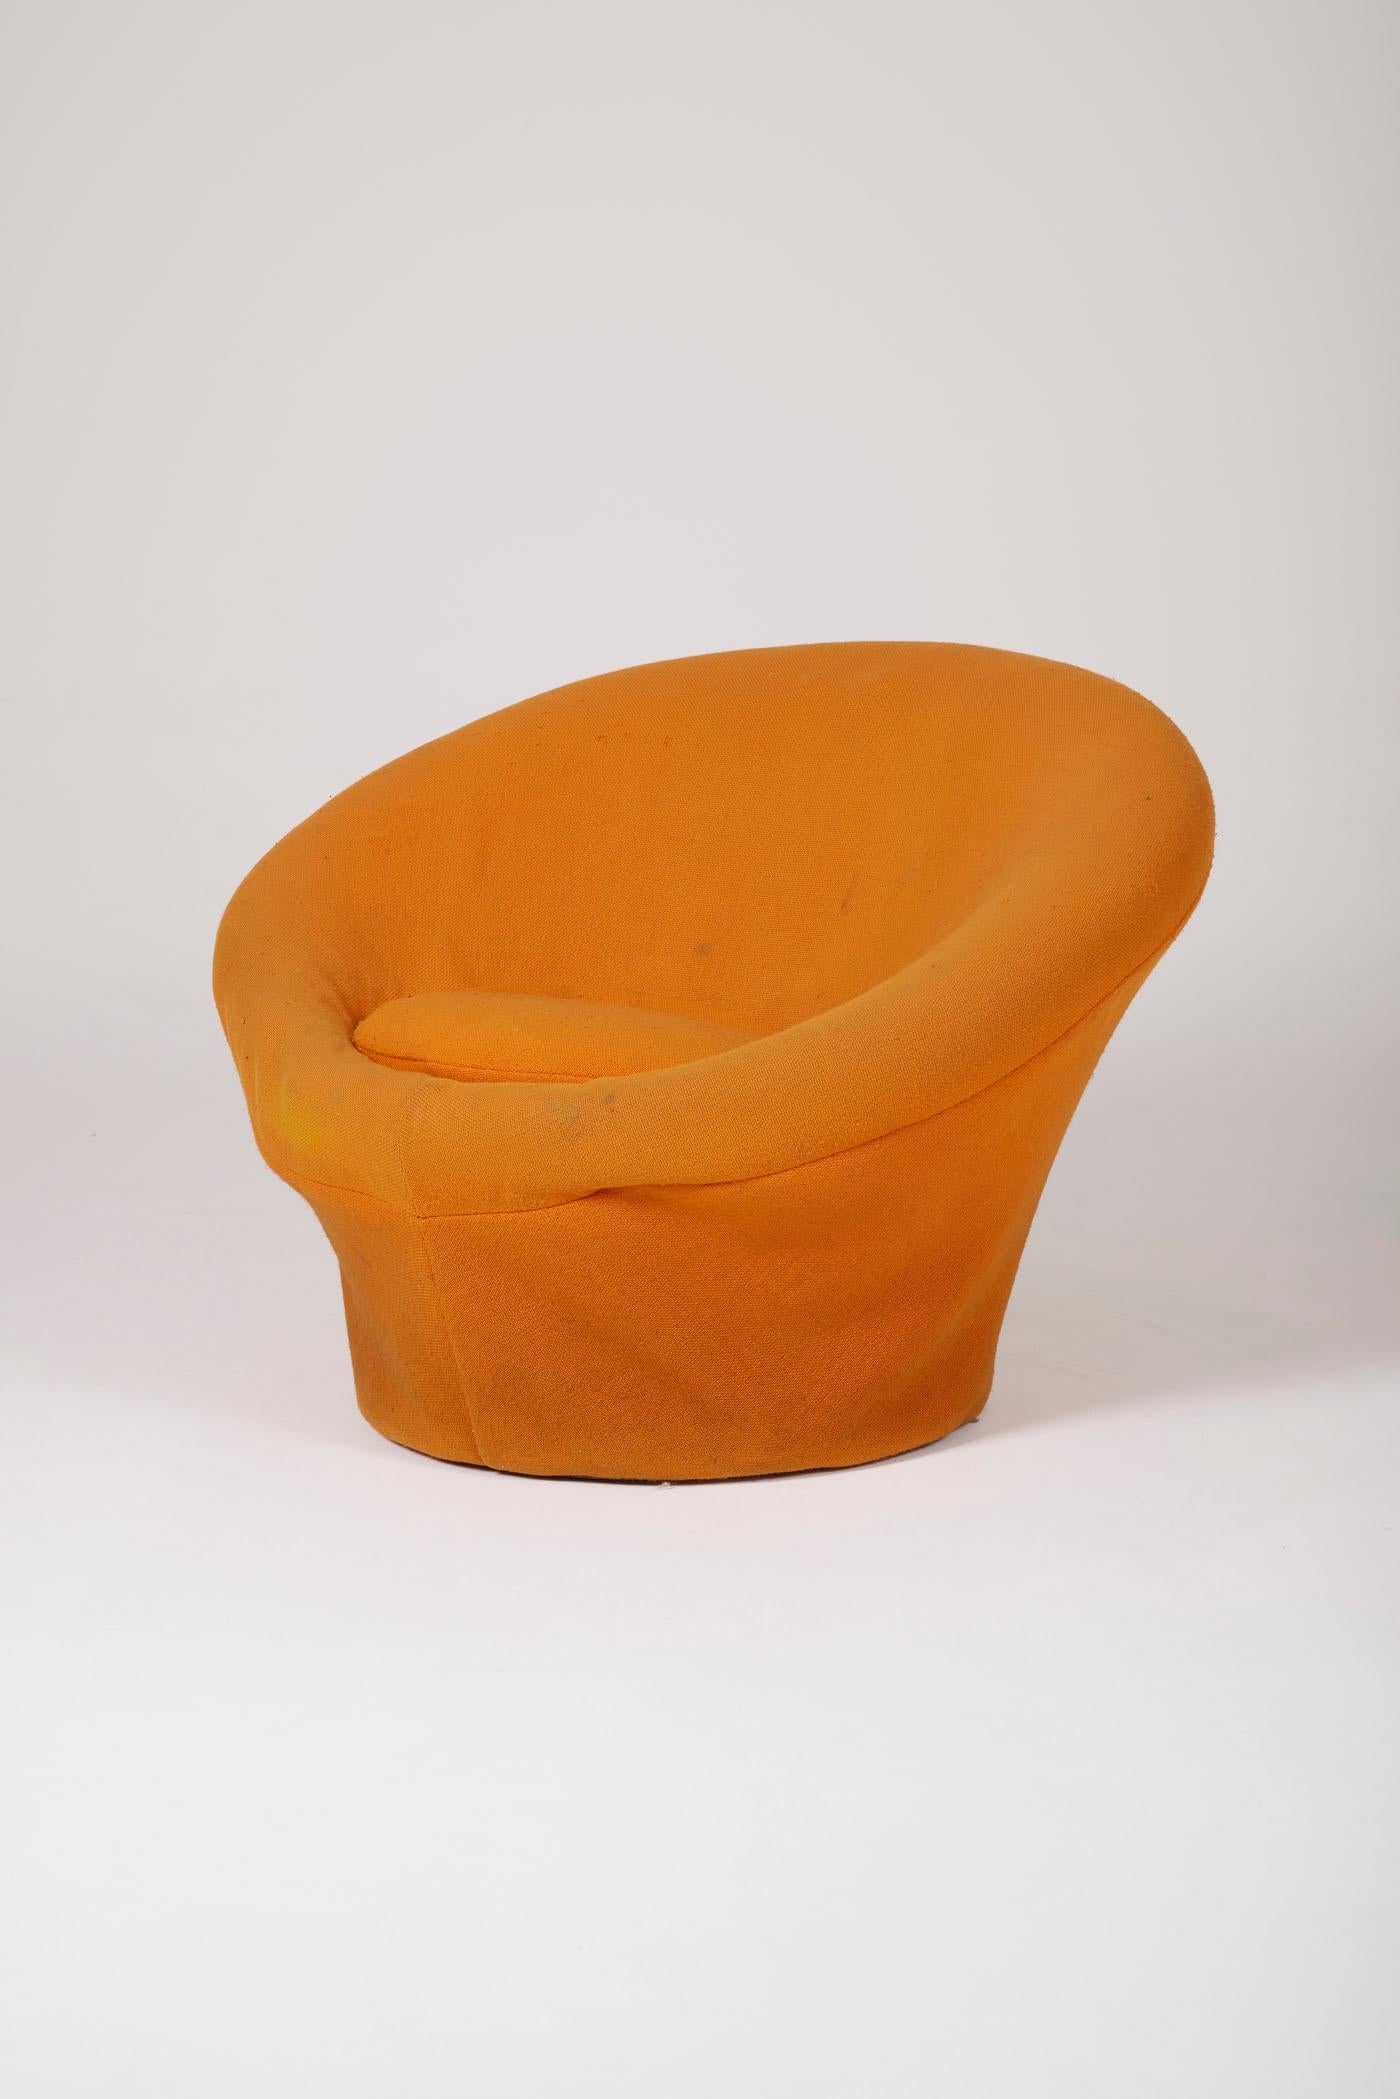  Fauteuil champignon du designer français Pierre Paulin (1927-2009), édité par Artifort dans les années 1960. Ce fauteuil emblématique est tapissé dans son tissu orange d'origine. Révolutionnant le monde du design dans les années 1960 avec ses